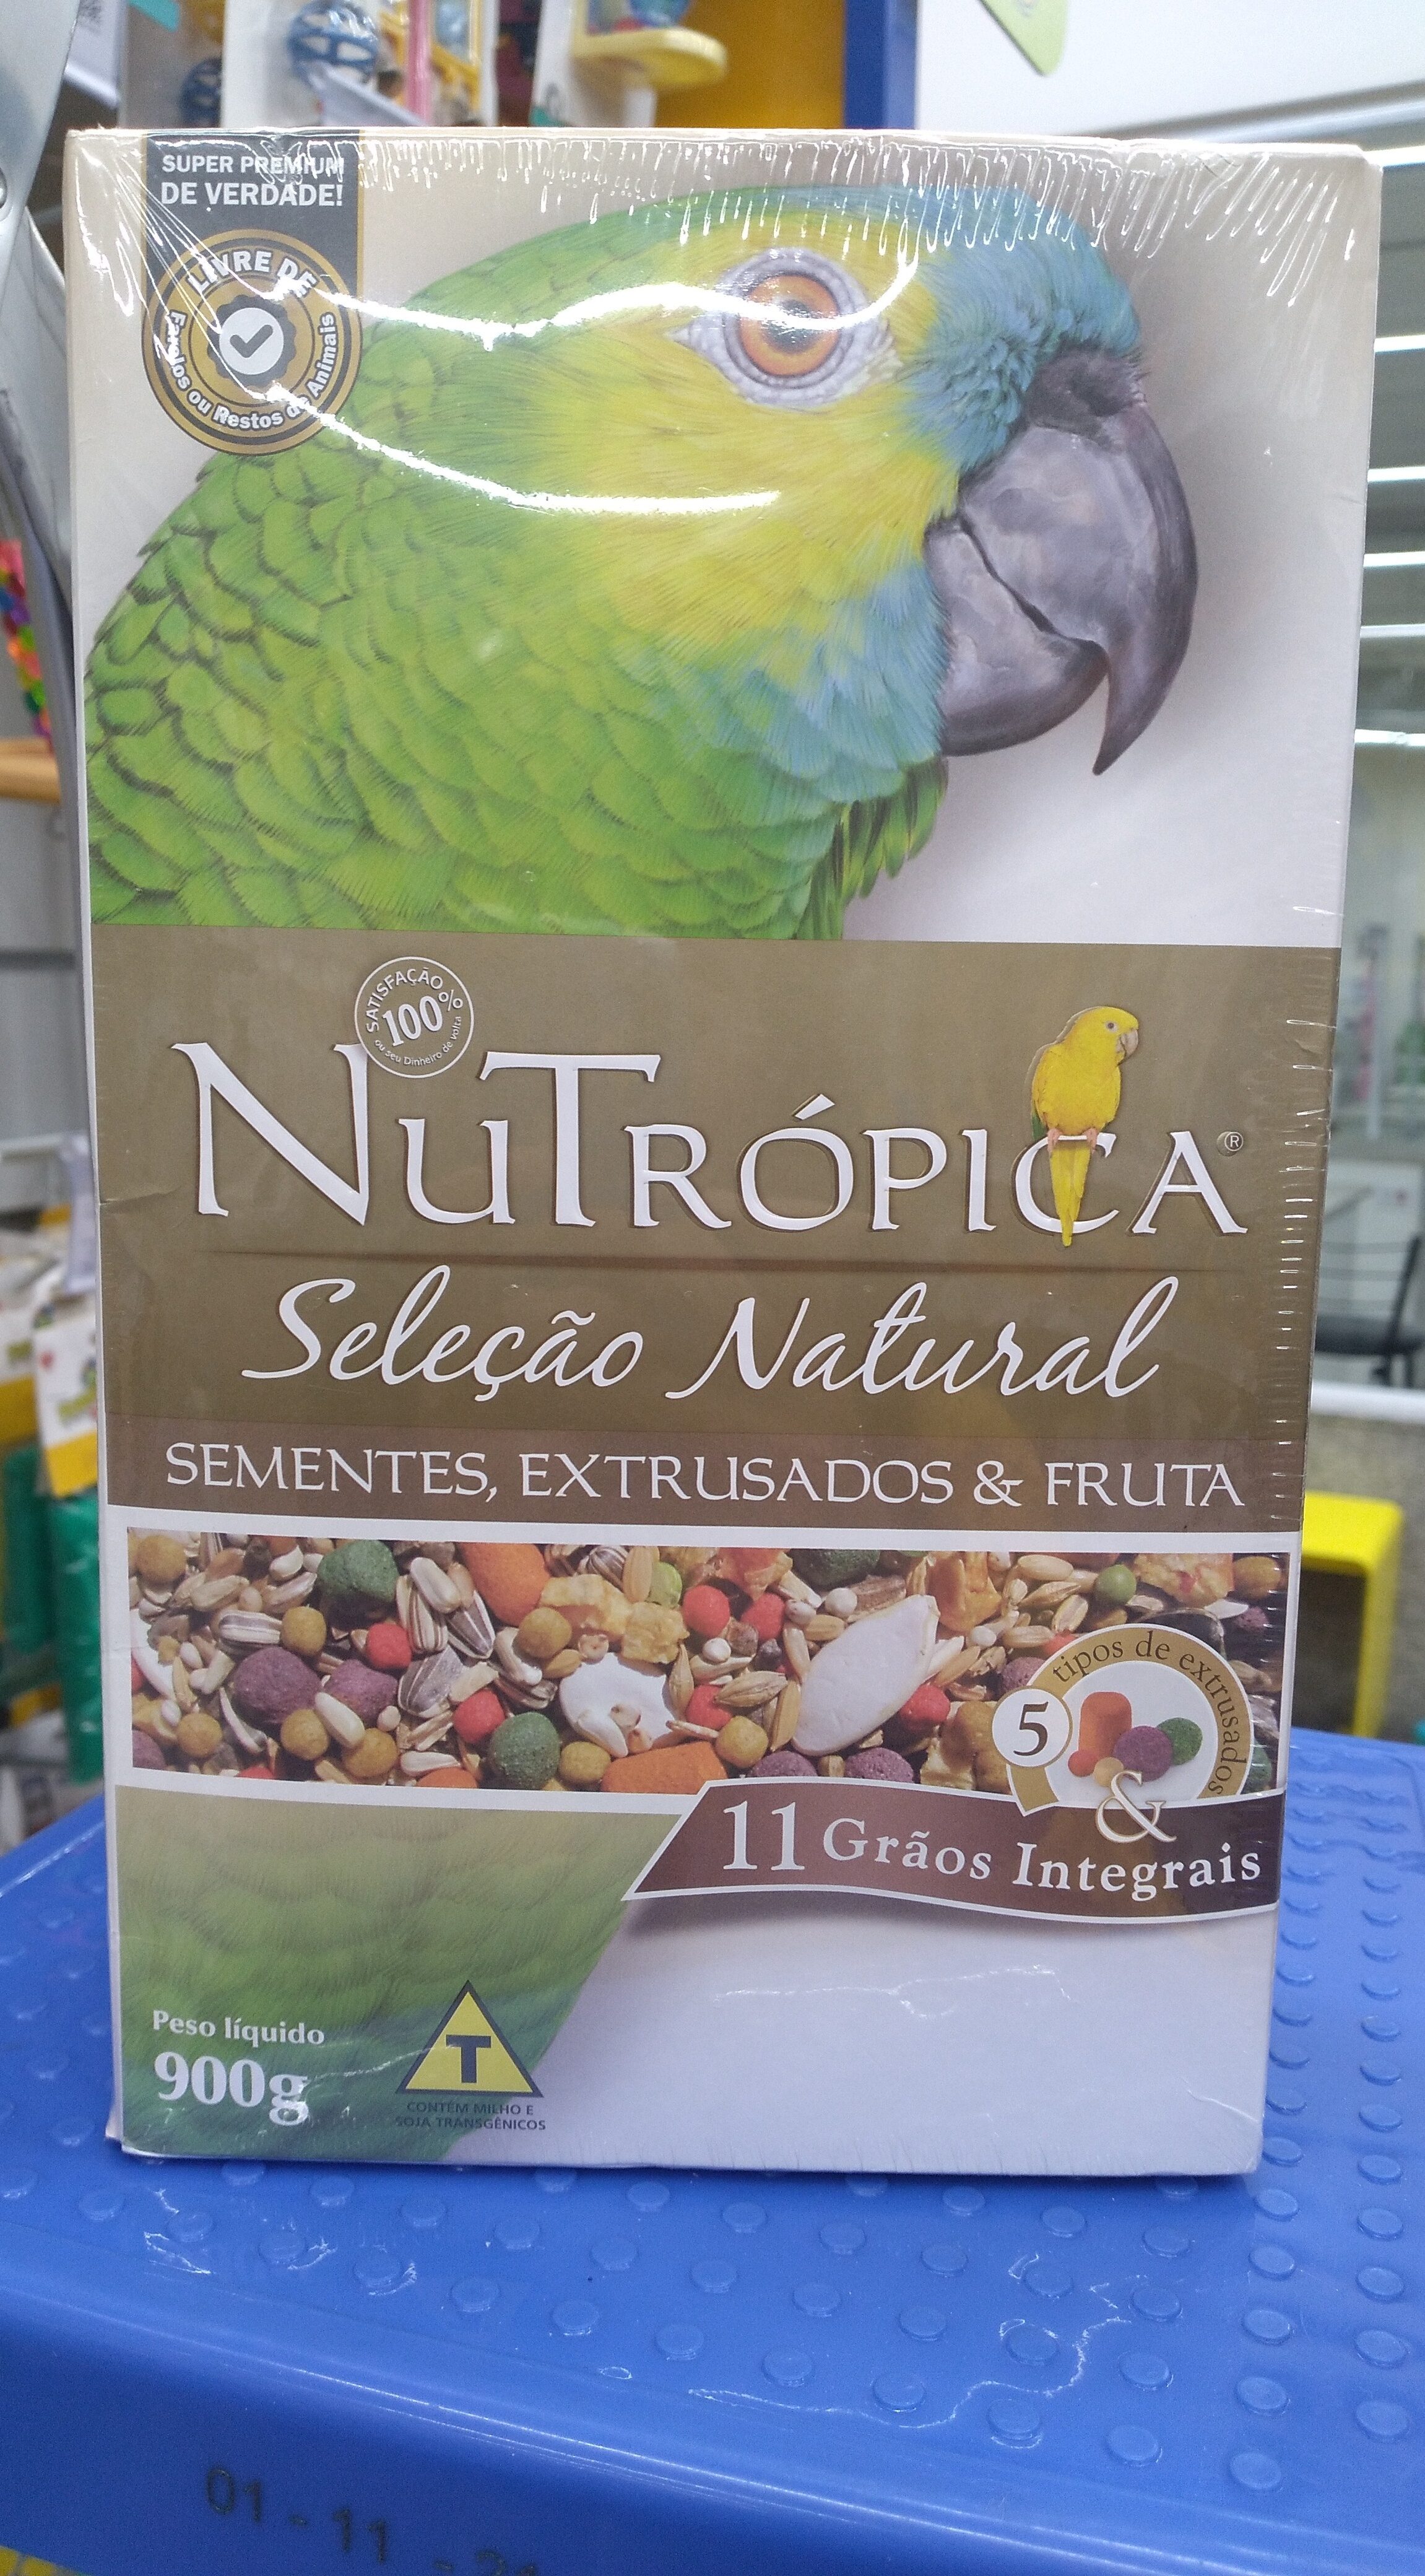 Nutrópica seleção natural 900g - Product - pt